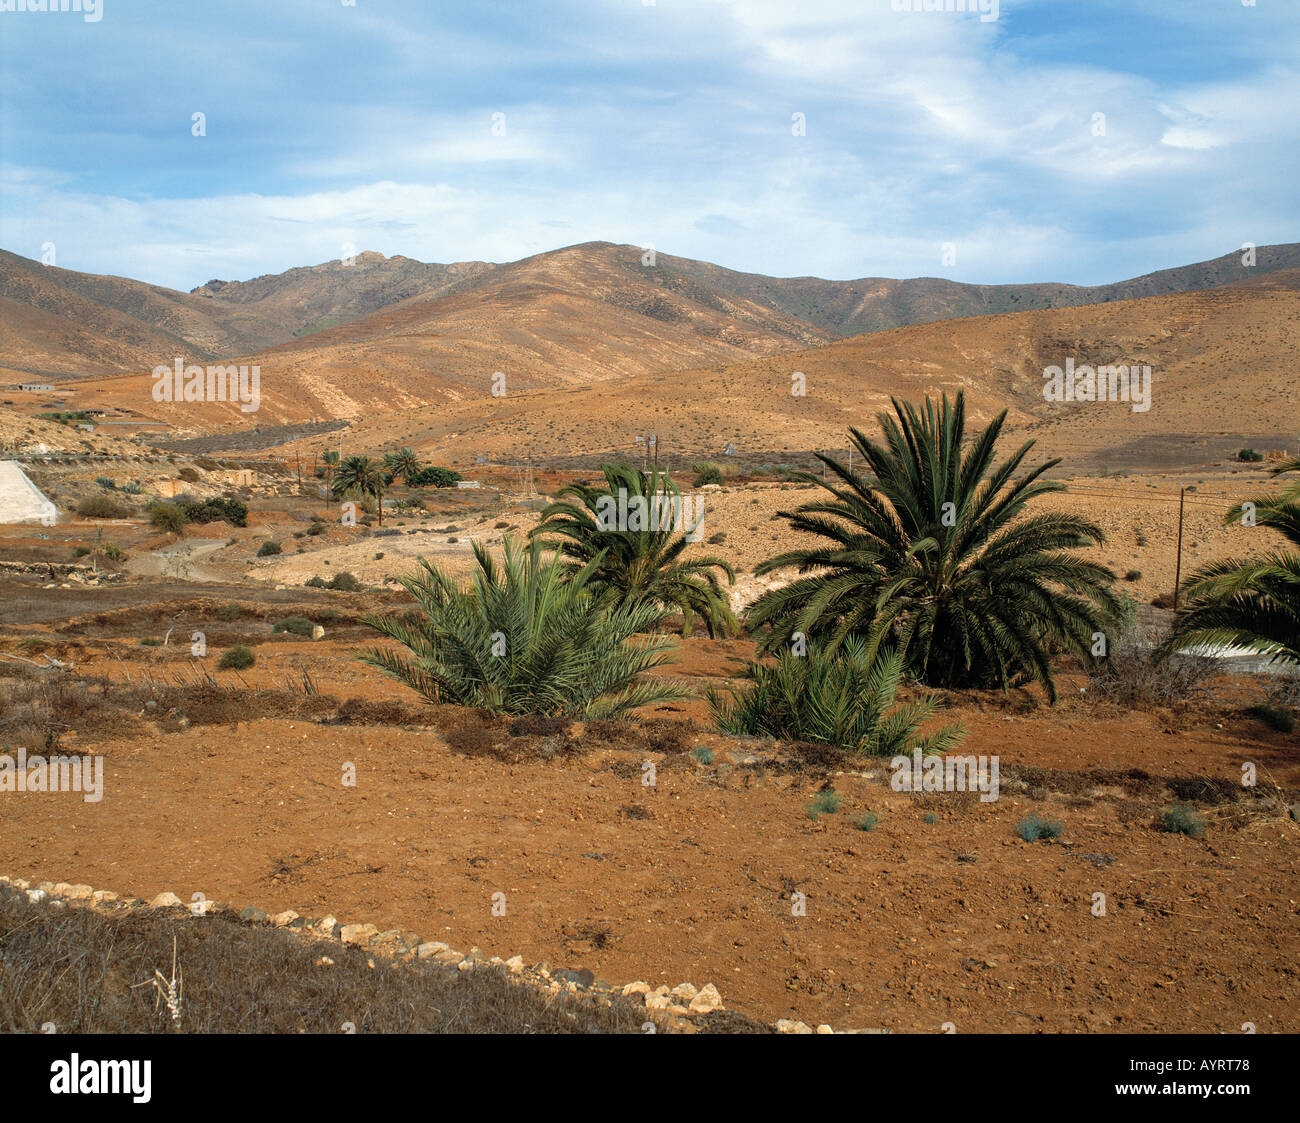 Huegelige Landschaft, Berglandschaft kahle, karge Landschaft, oasenaehnliches Tal, Offenburg, Fuerteventura, Kanarische isole Foto Stock